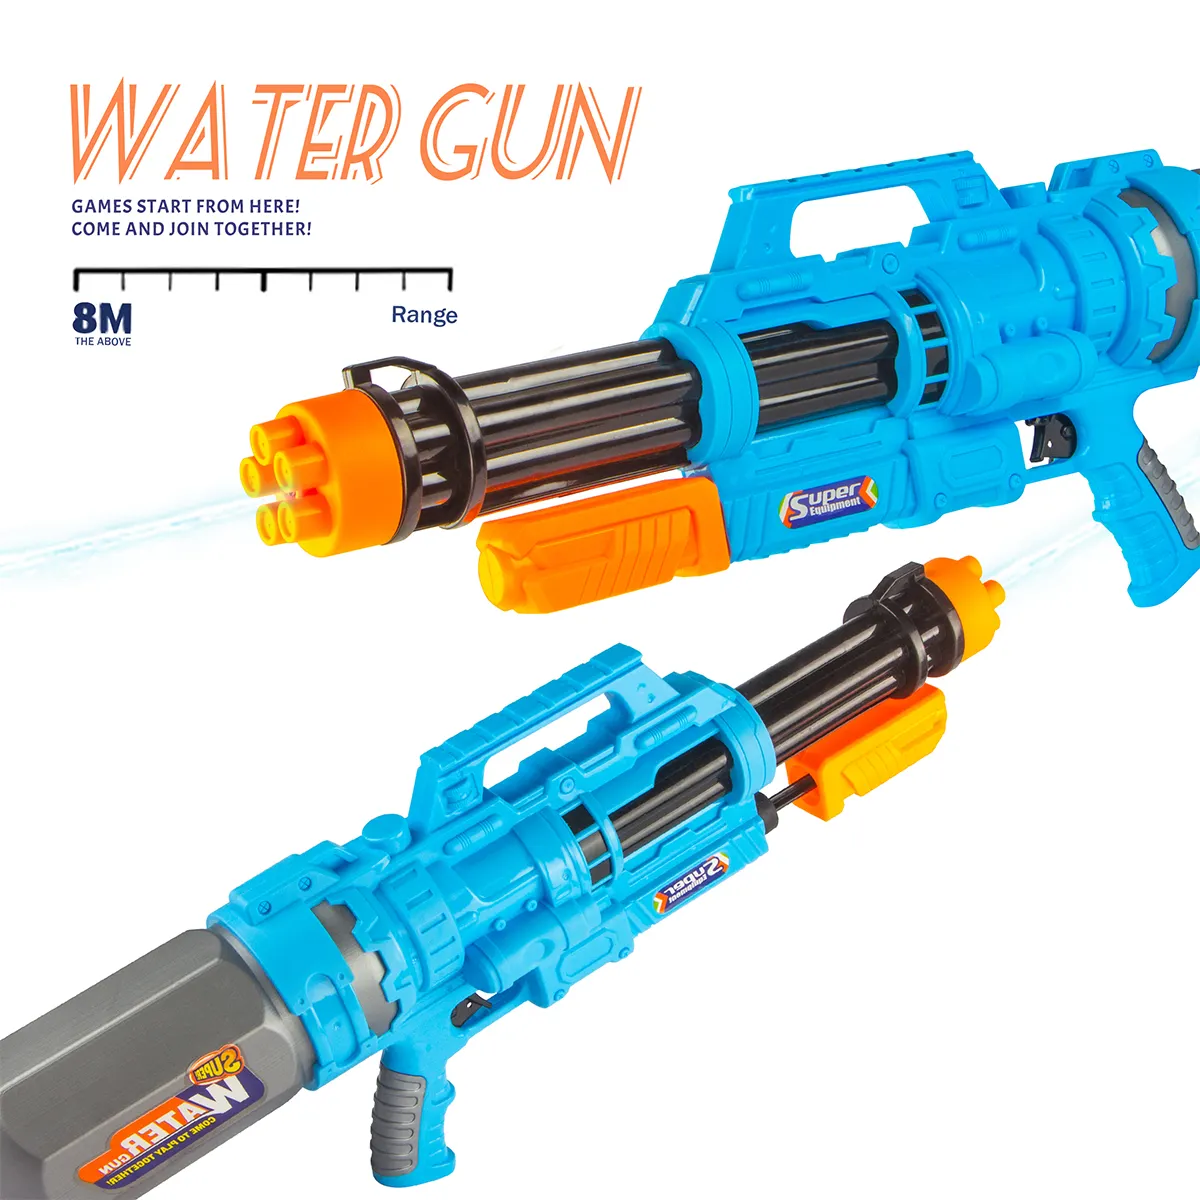 1150ml Wassers chieß spielzeug Kunststoff Super Big Air Pressure Sommer Wasser pistole Spielzeug Outdoor Sportspiel zeug